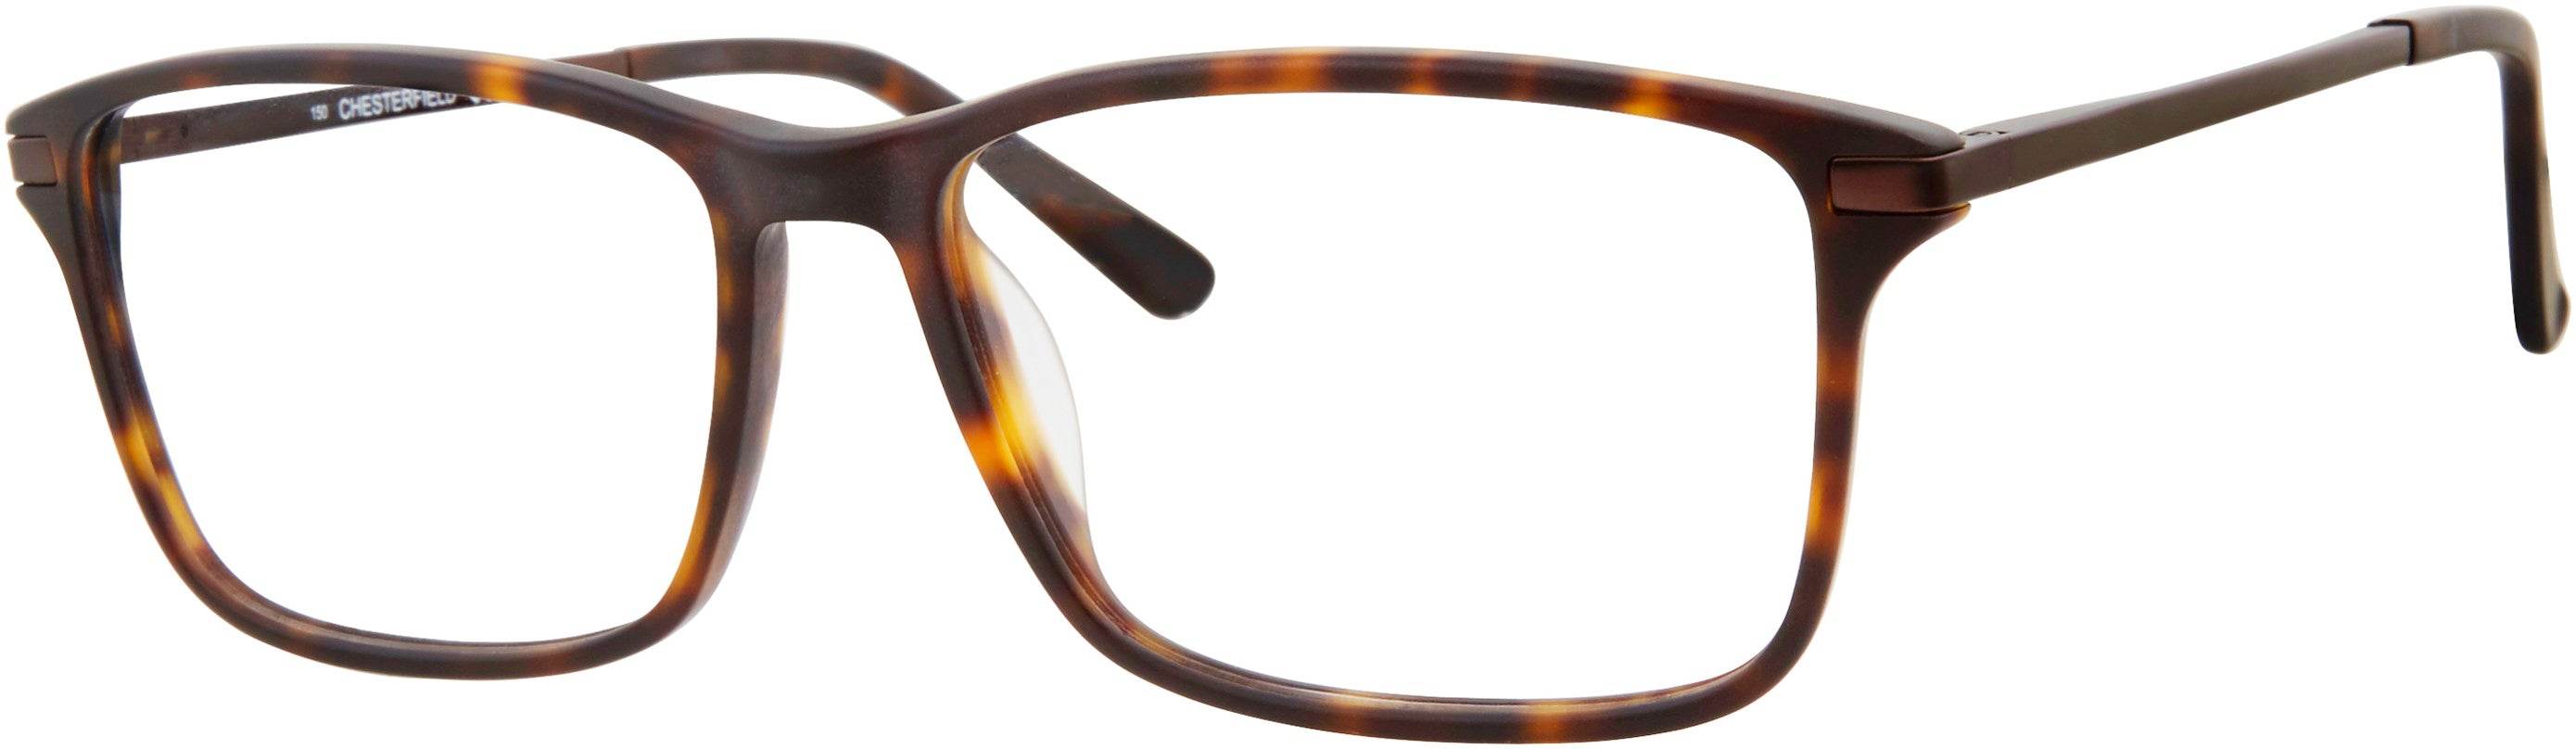  Chesterfield 64XL Rectangular Eyeglasses 0086-0086  Dark Havana (00 Demo Lens)